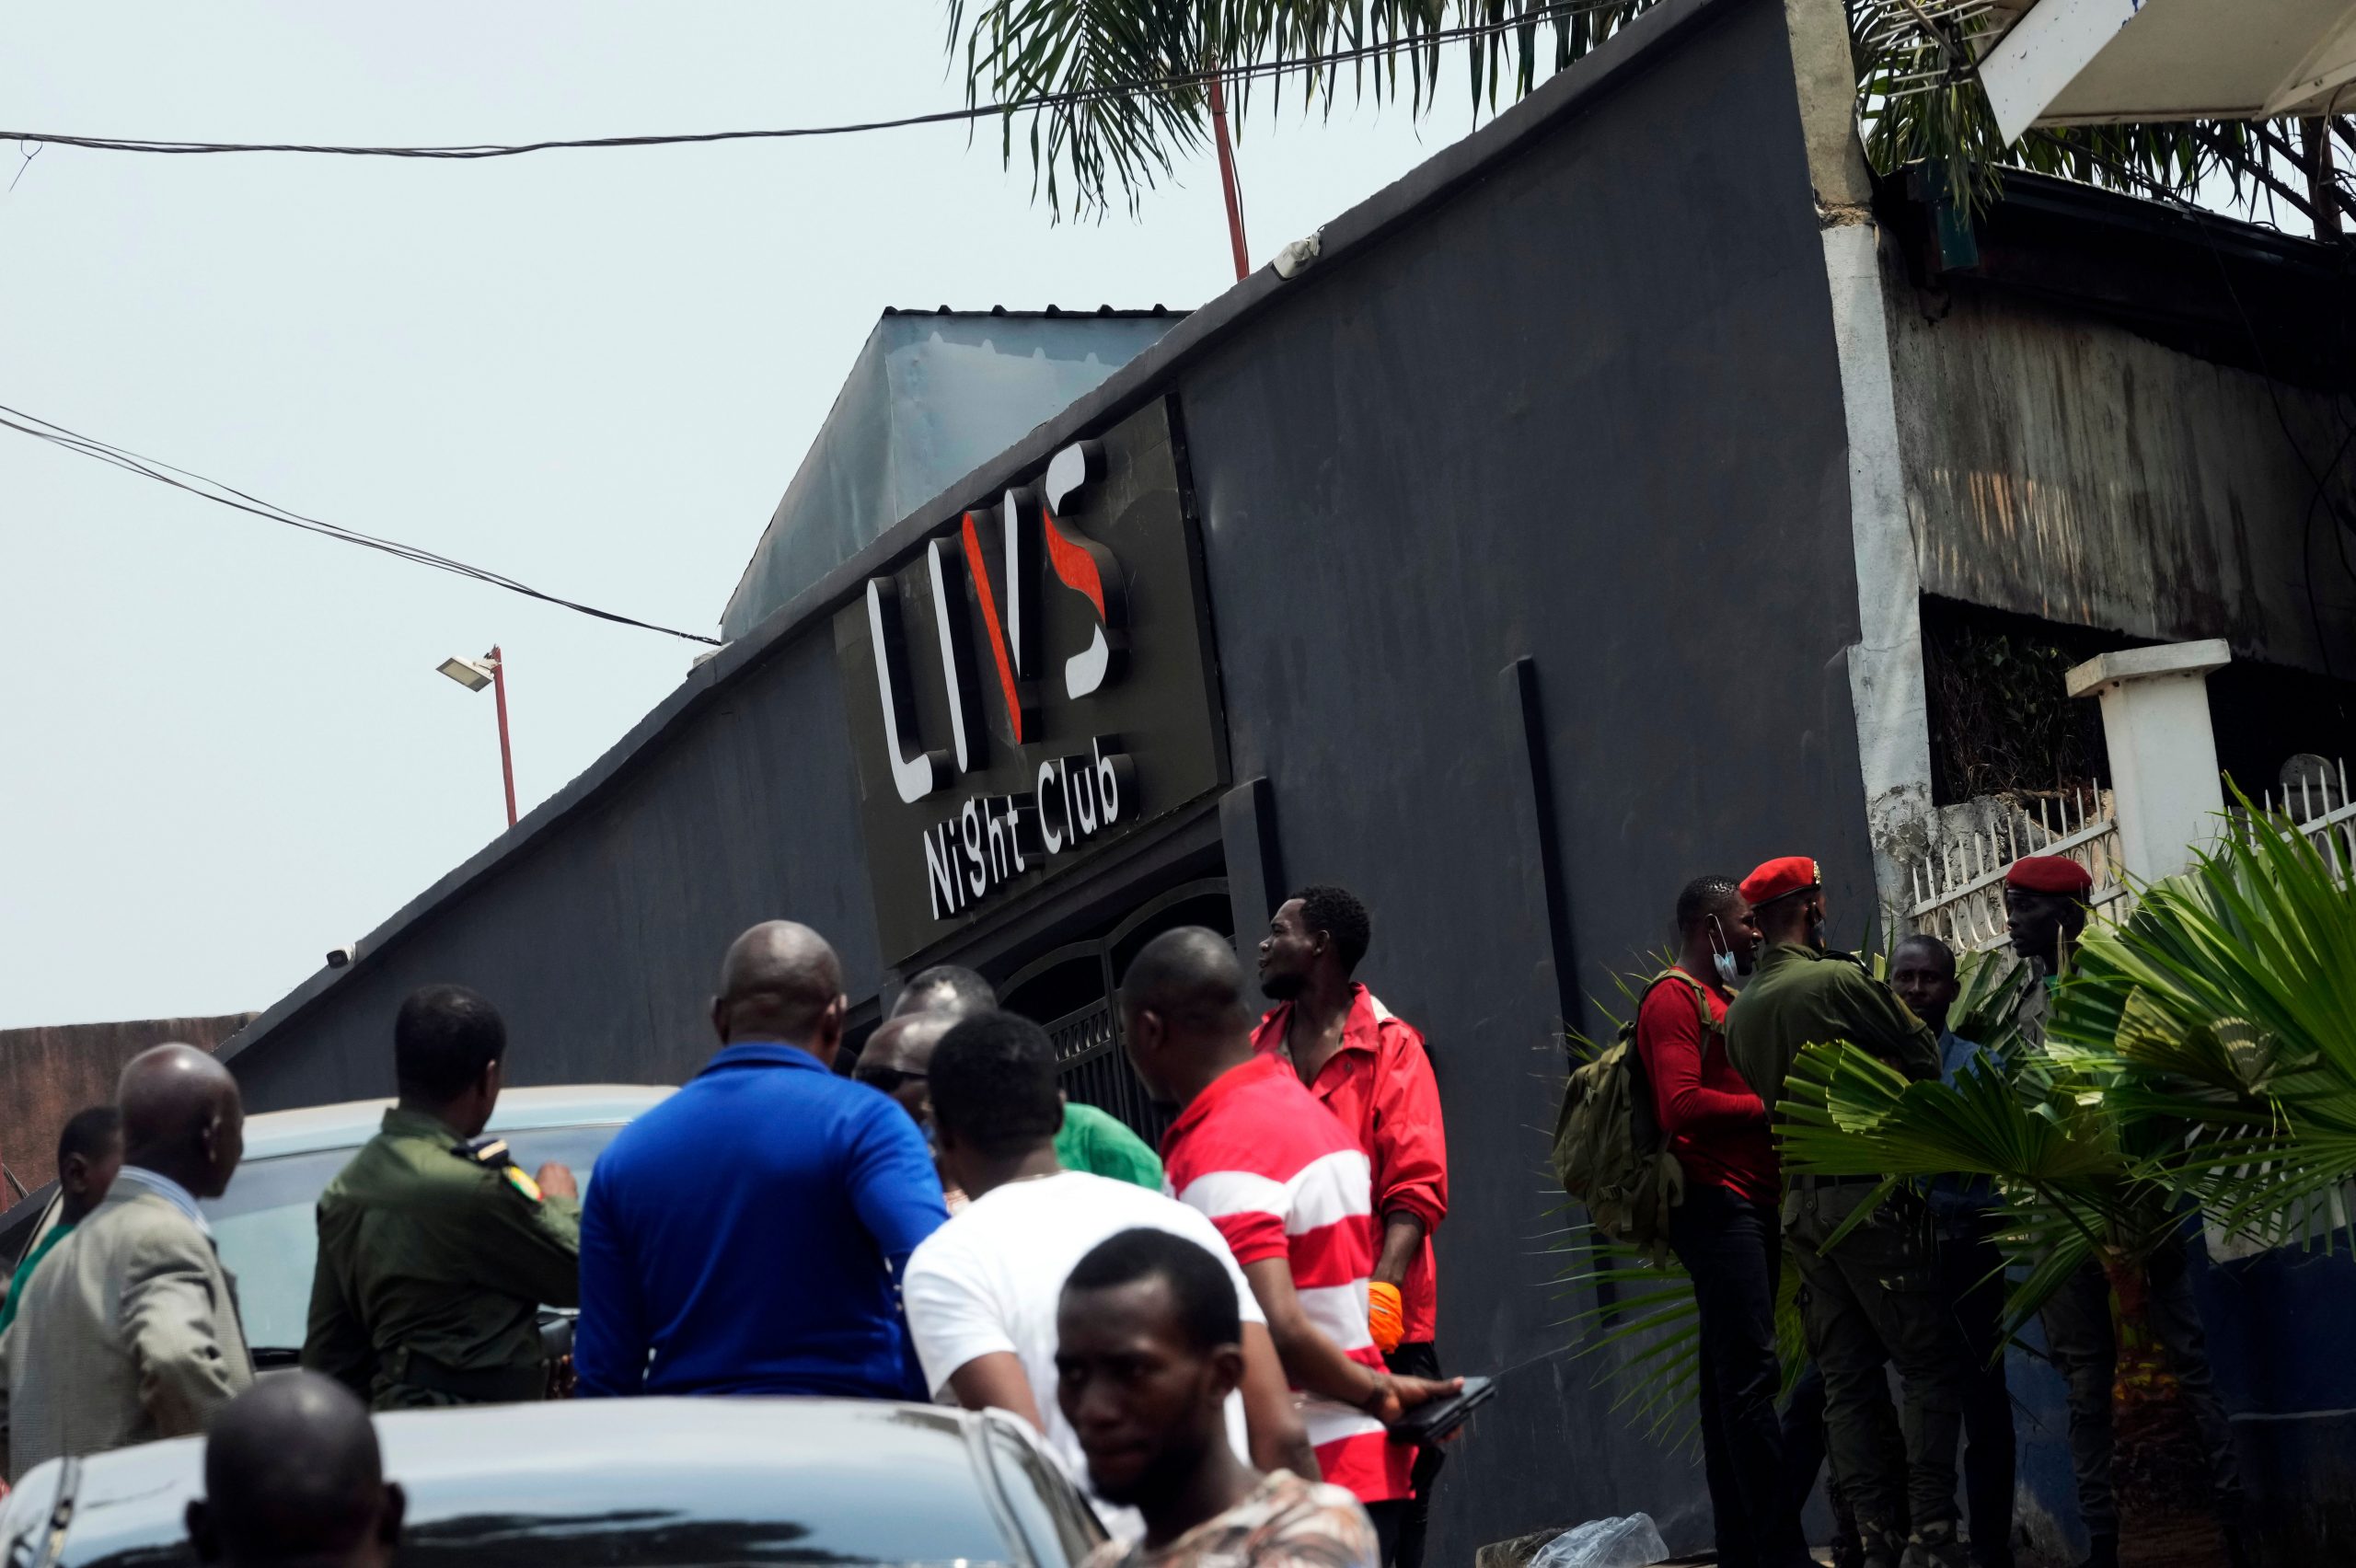 17 dead in nightclub fire in Cameroon’s capital Yaounde